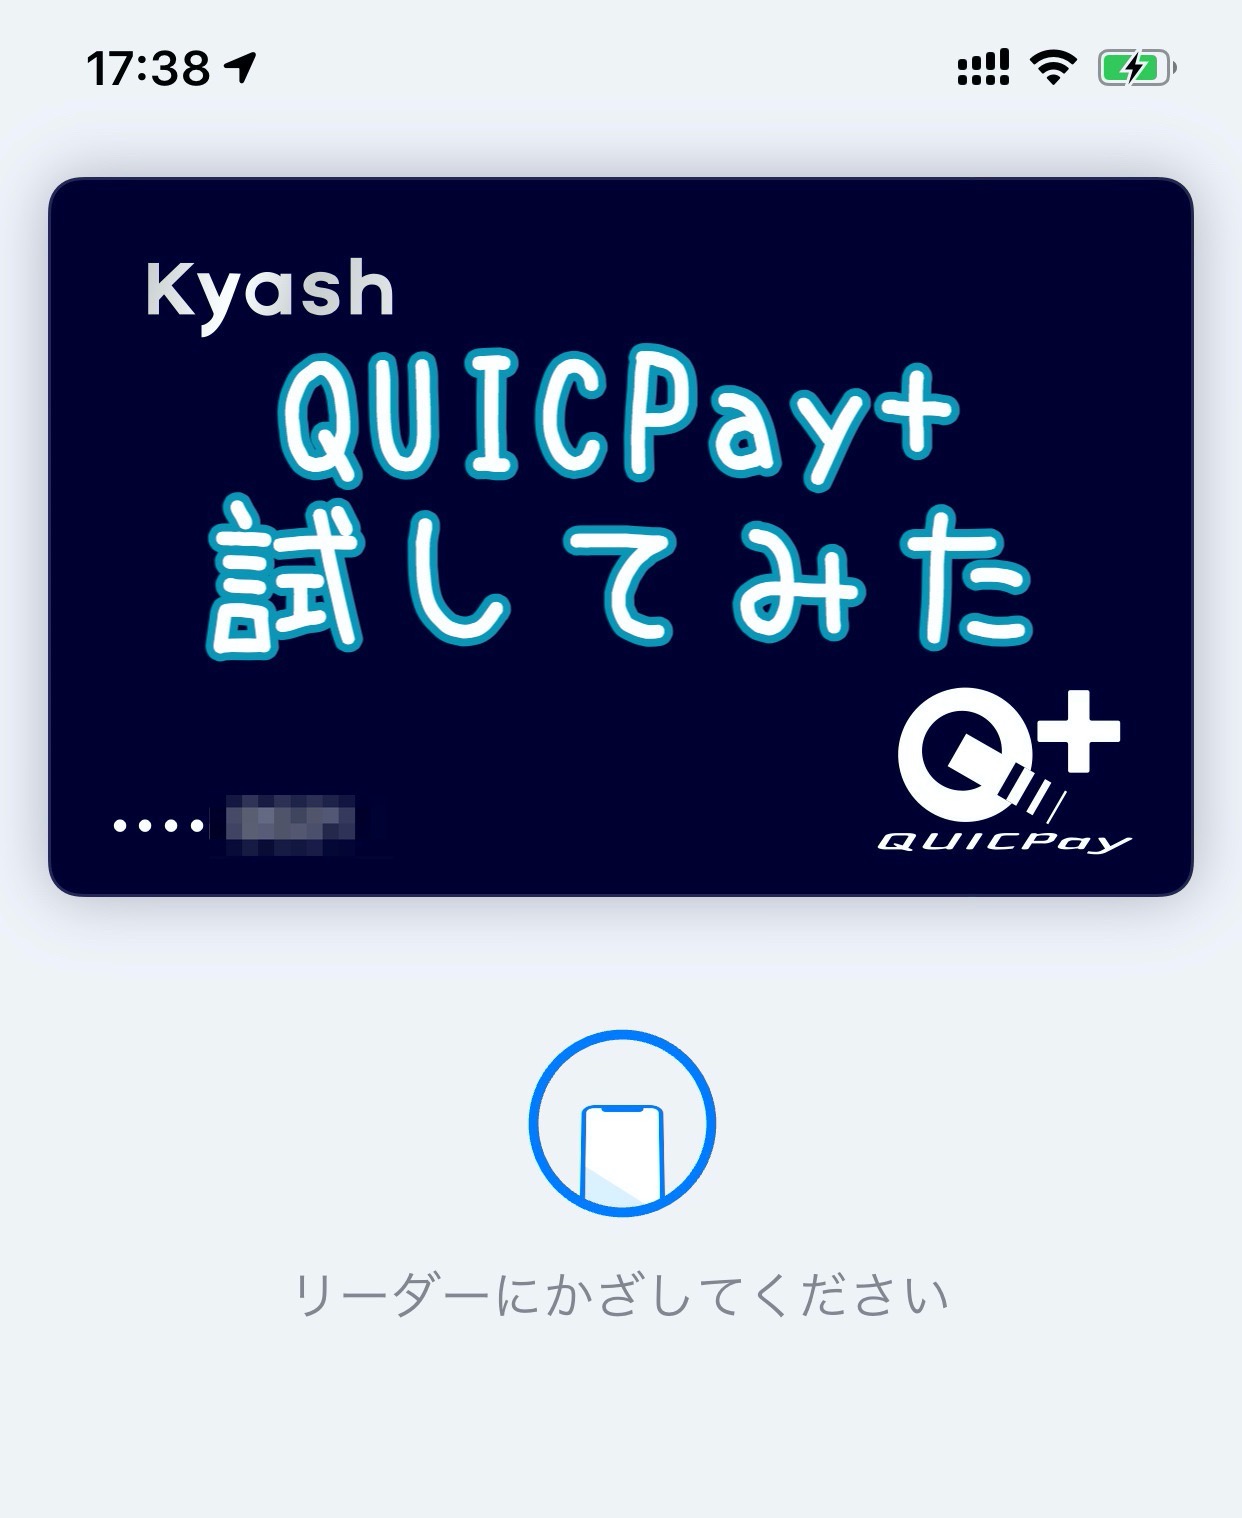 【Kyash】コンビニで「QUICPay+」で支払いしてみた【Apple Pay】